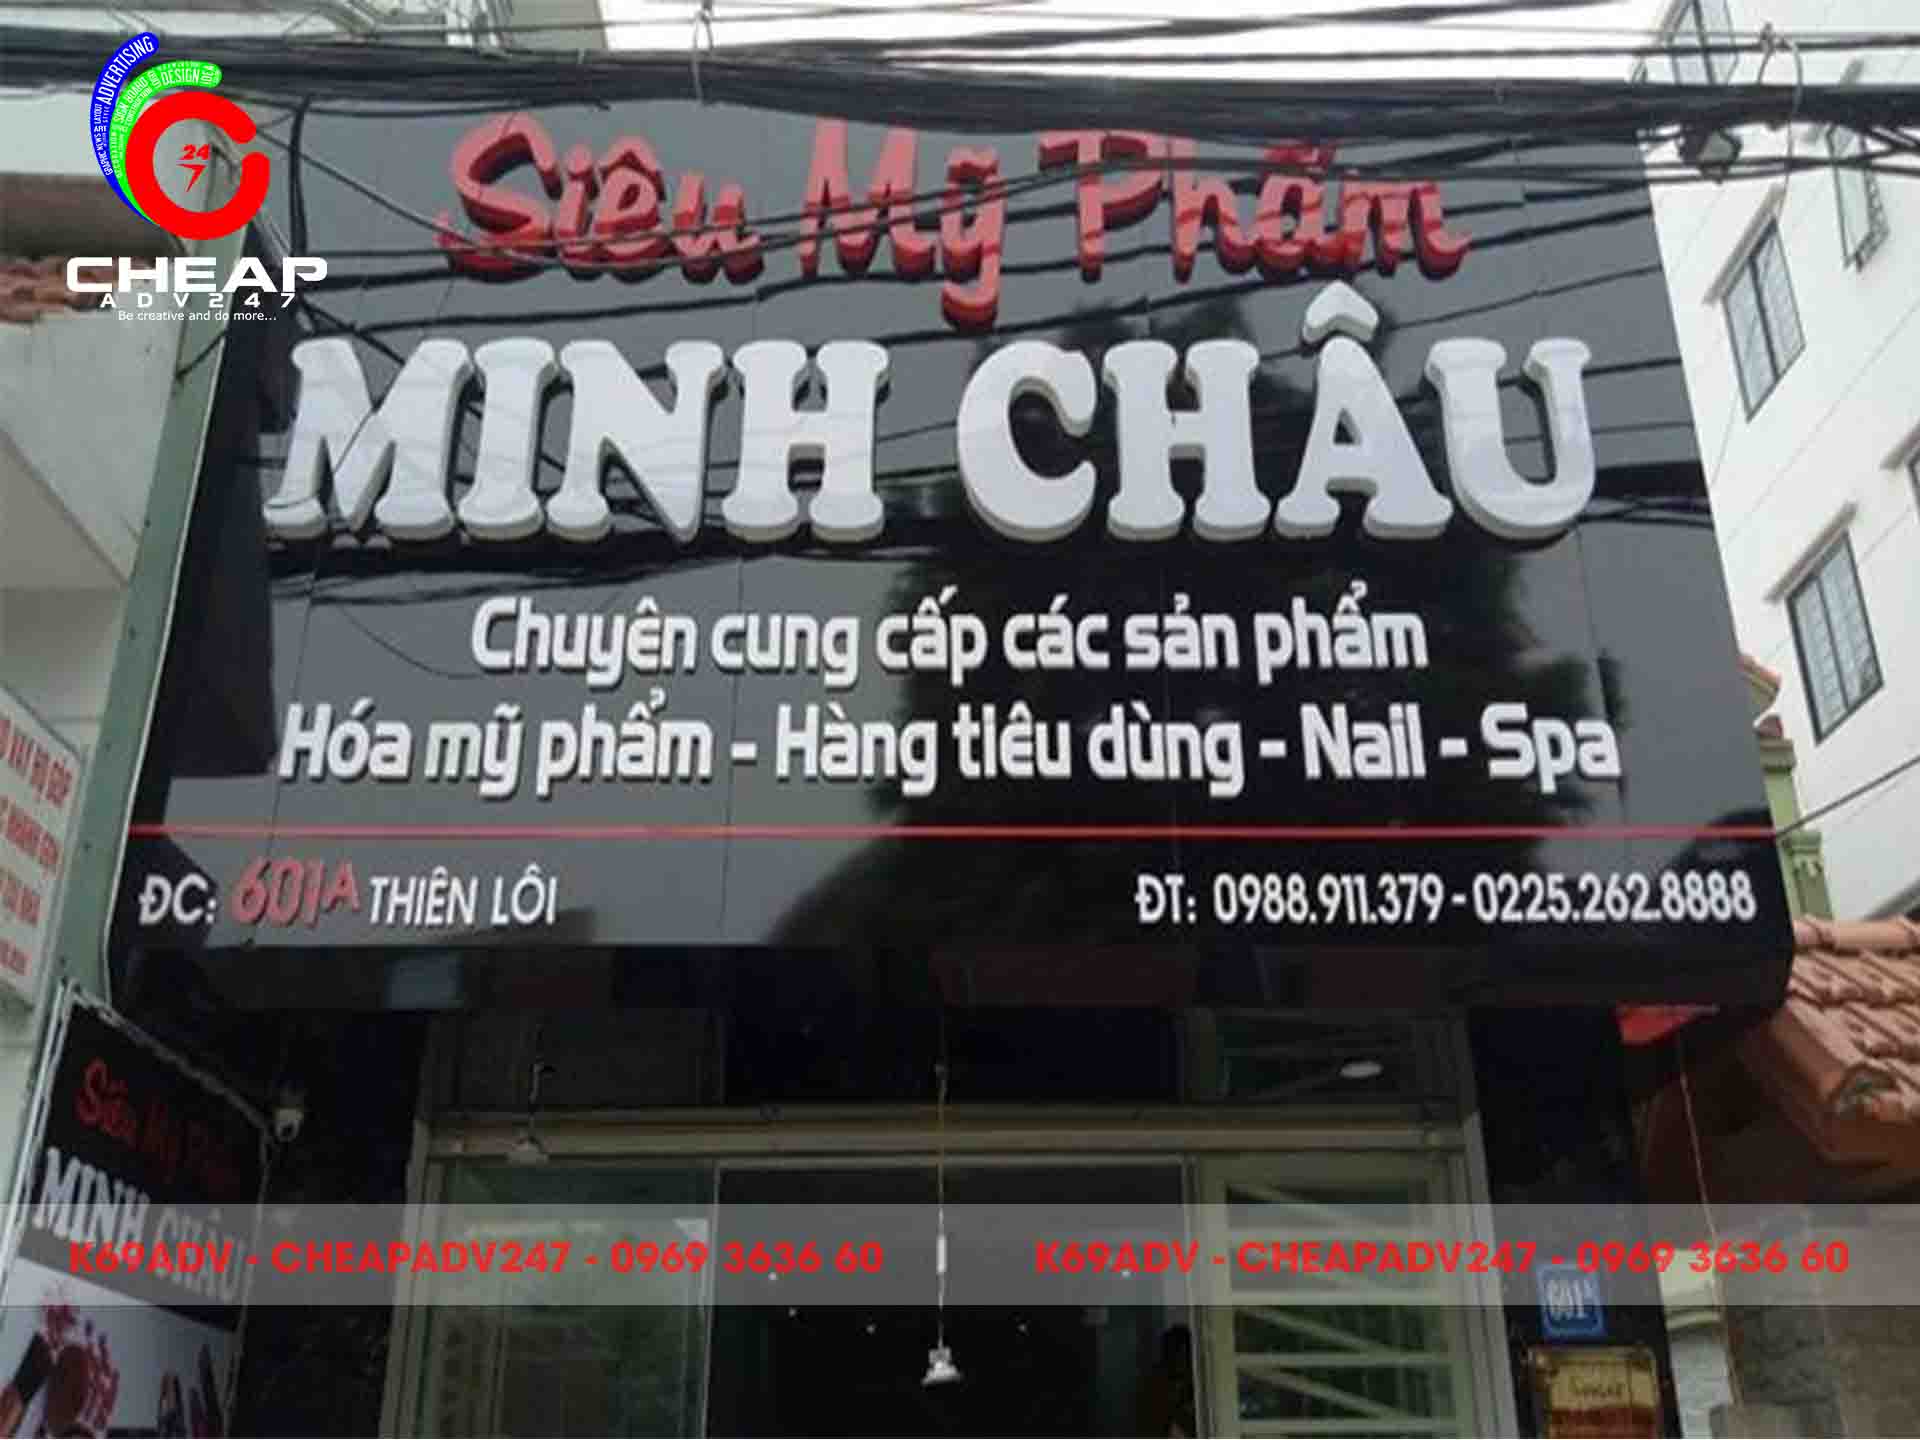 lam bang hieu shop cheapadv2471 2